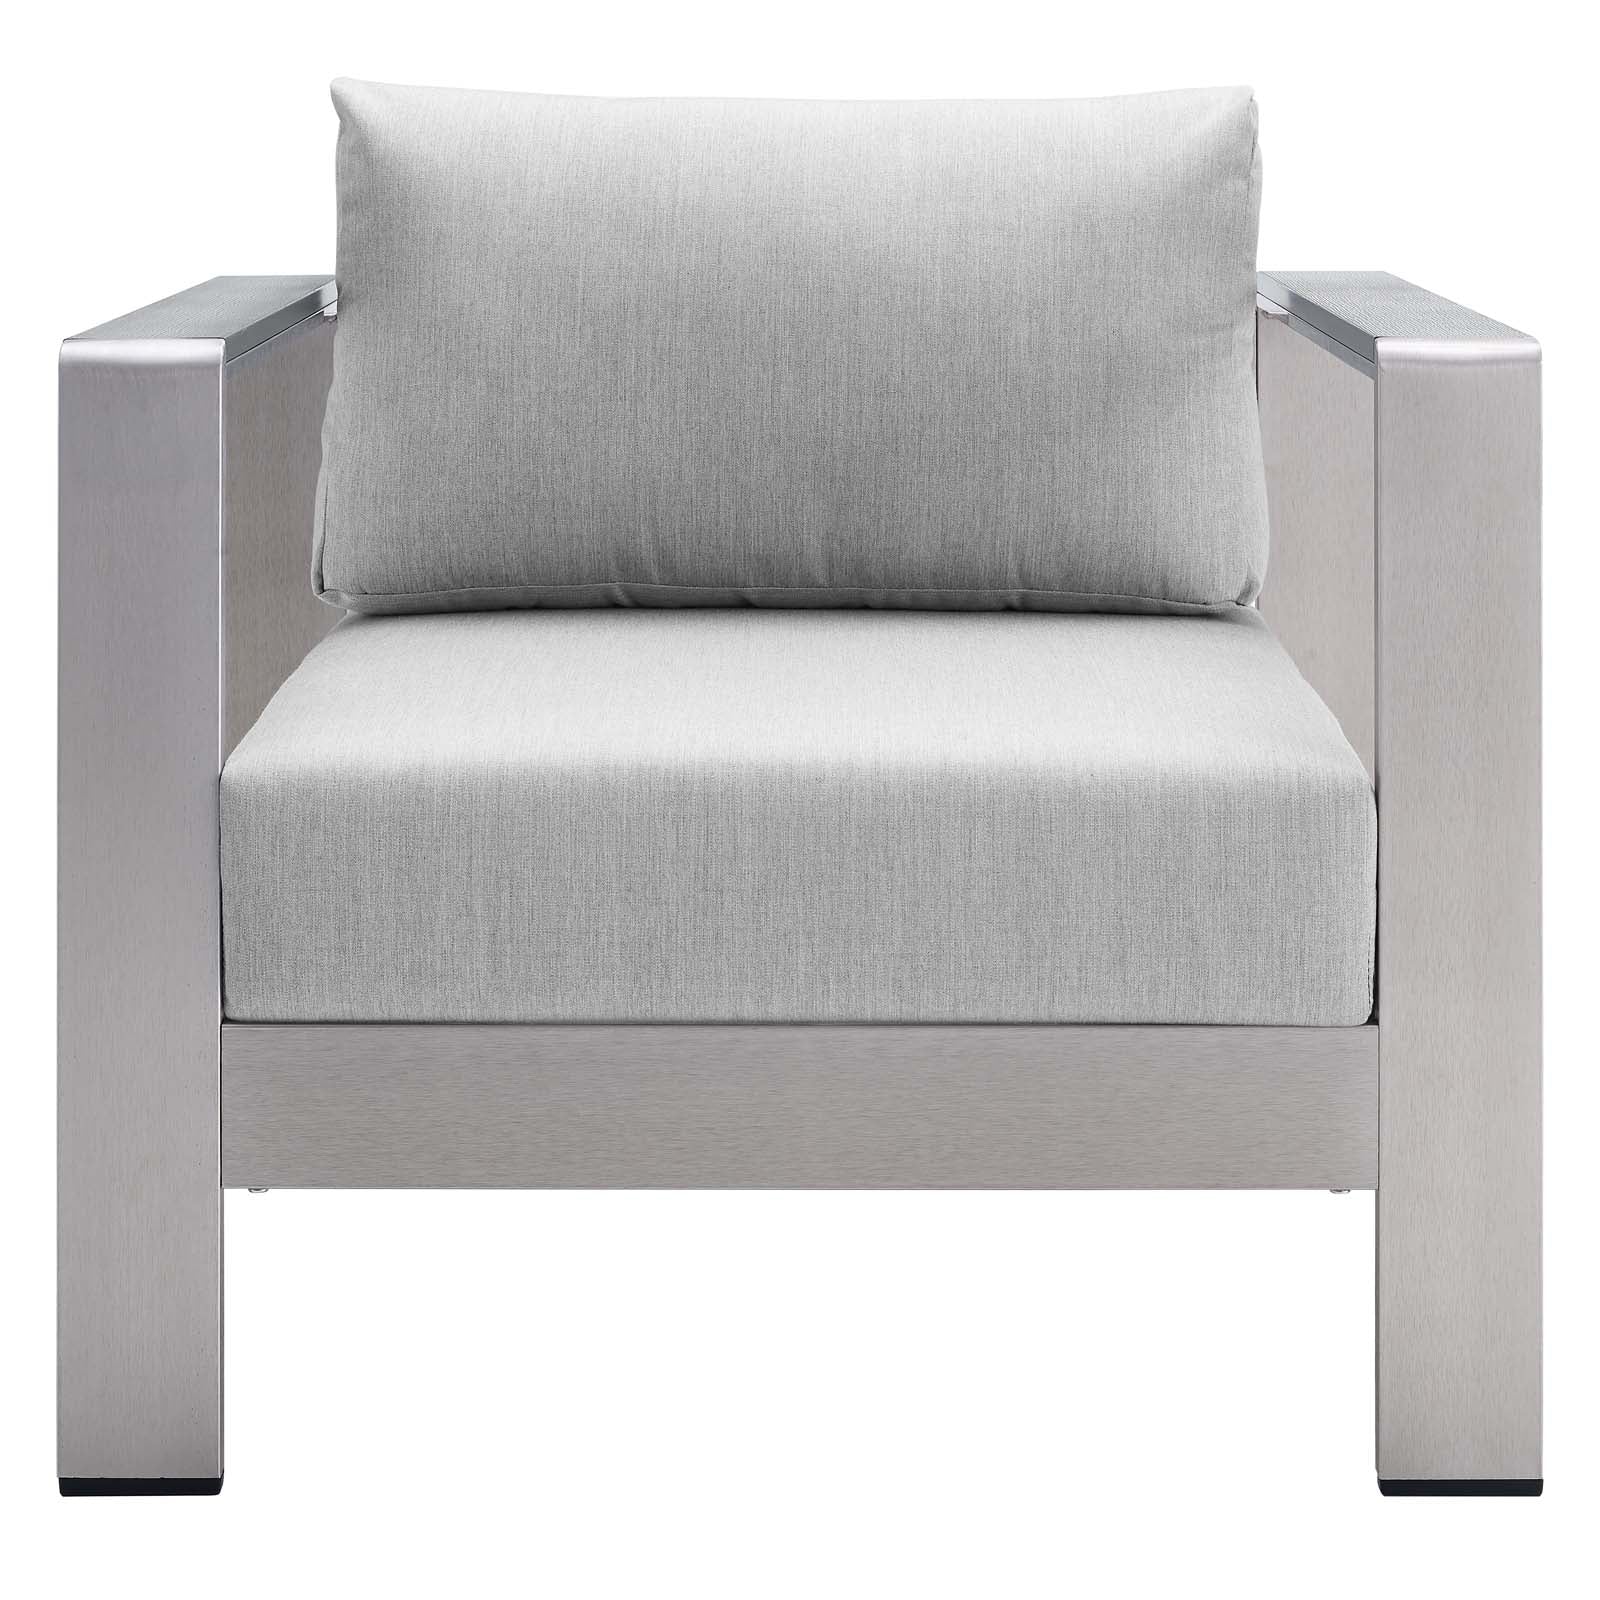 Modway Outdoor Chairs - Shore Sunbrella Fabric Aluminum Outdoor Patio Armchair Silver Gray